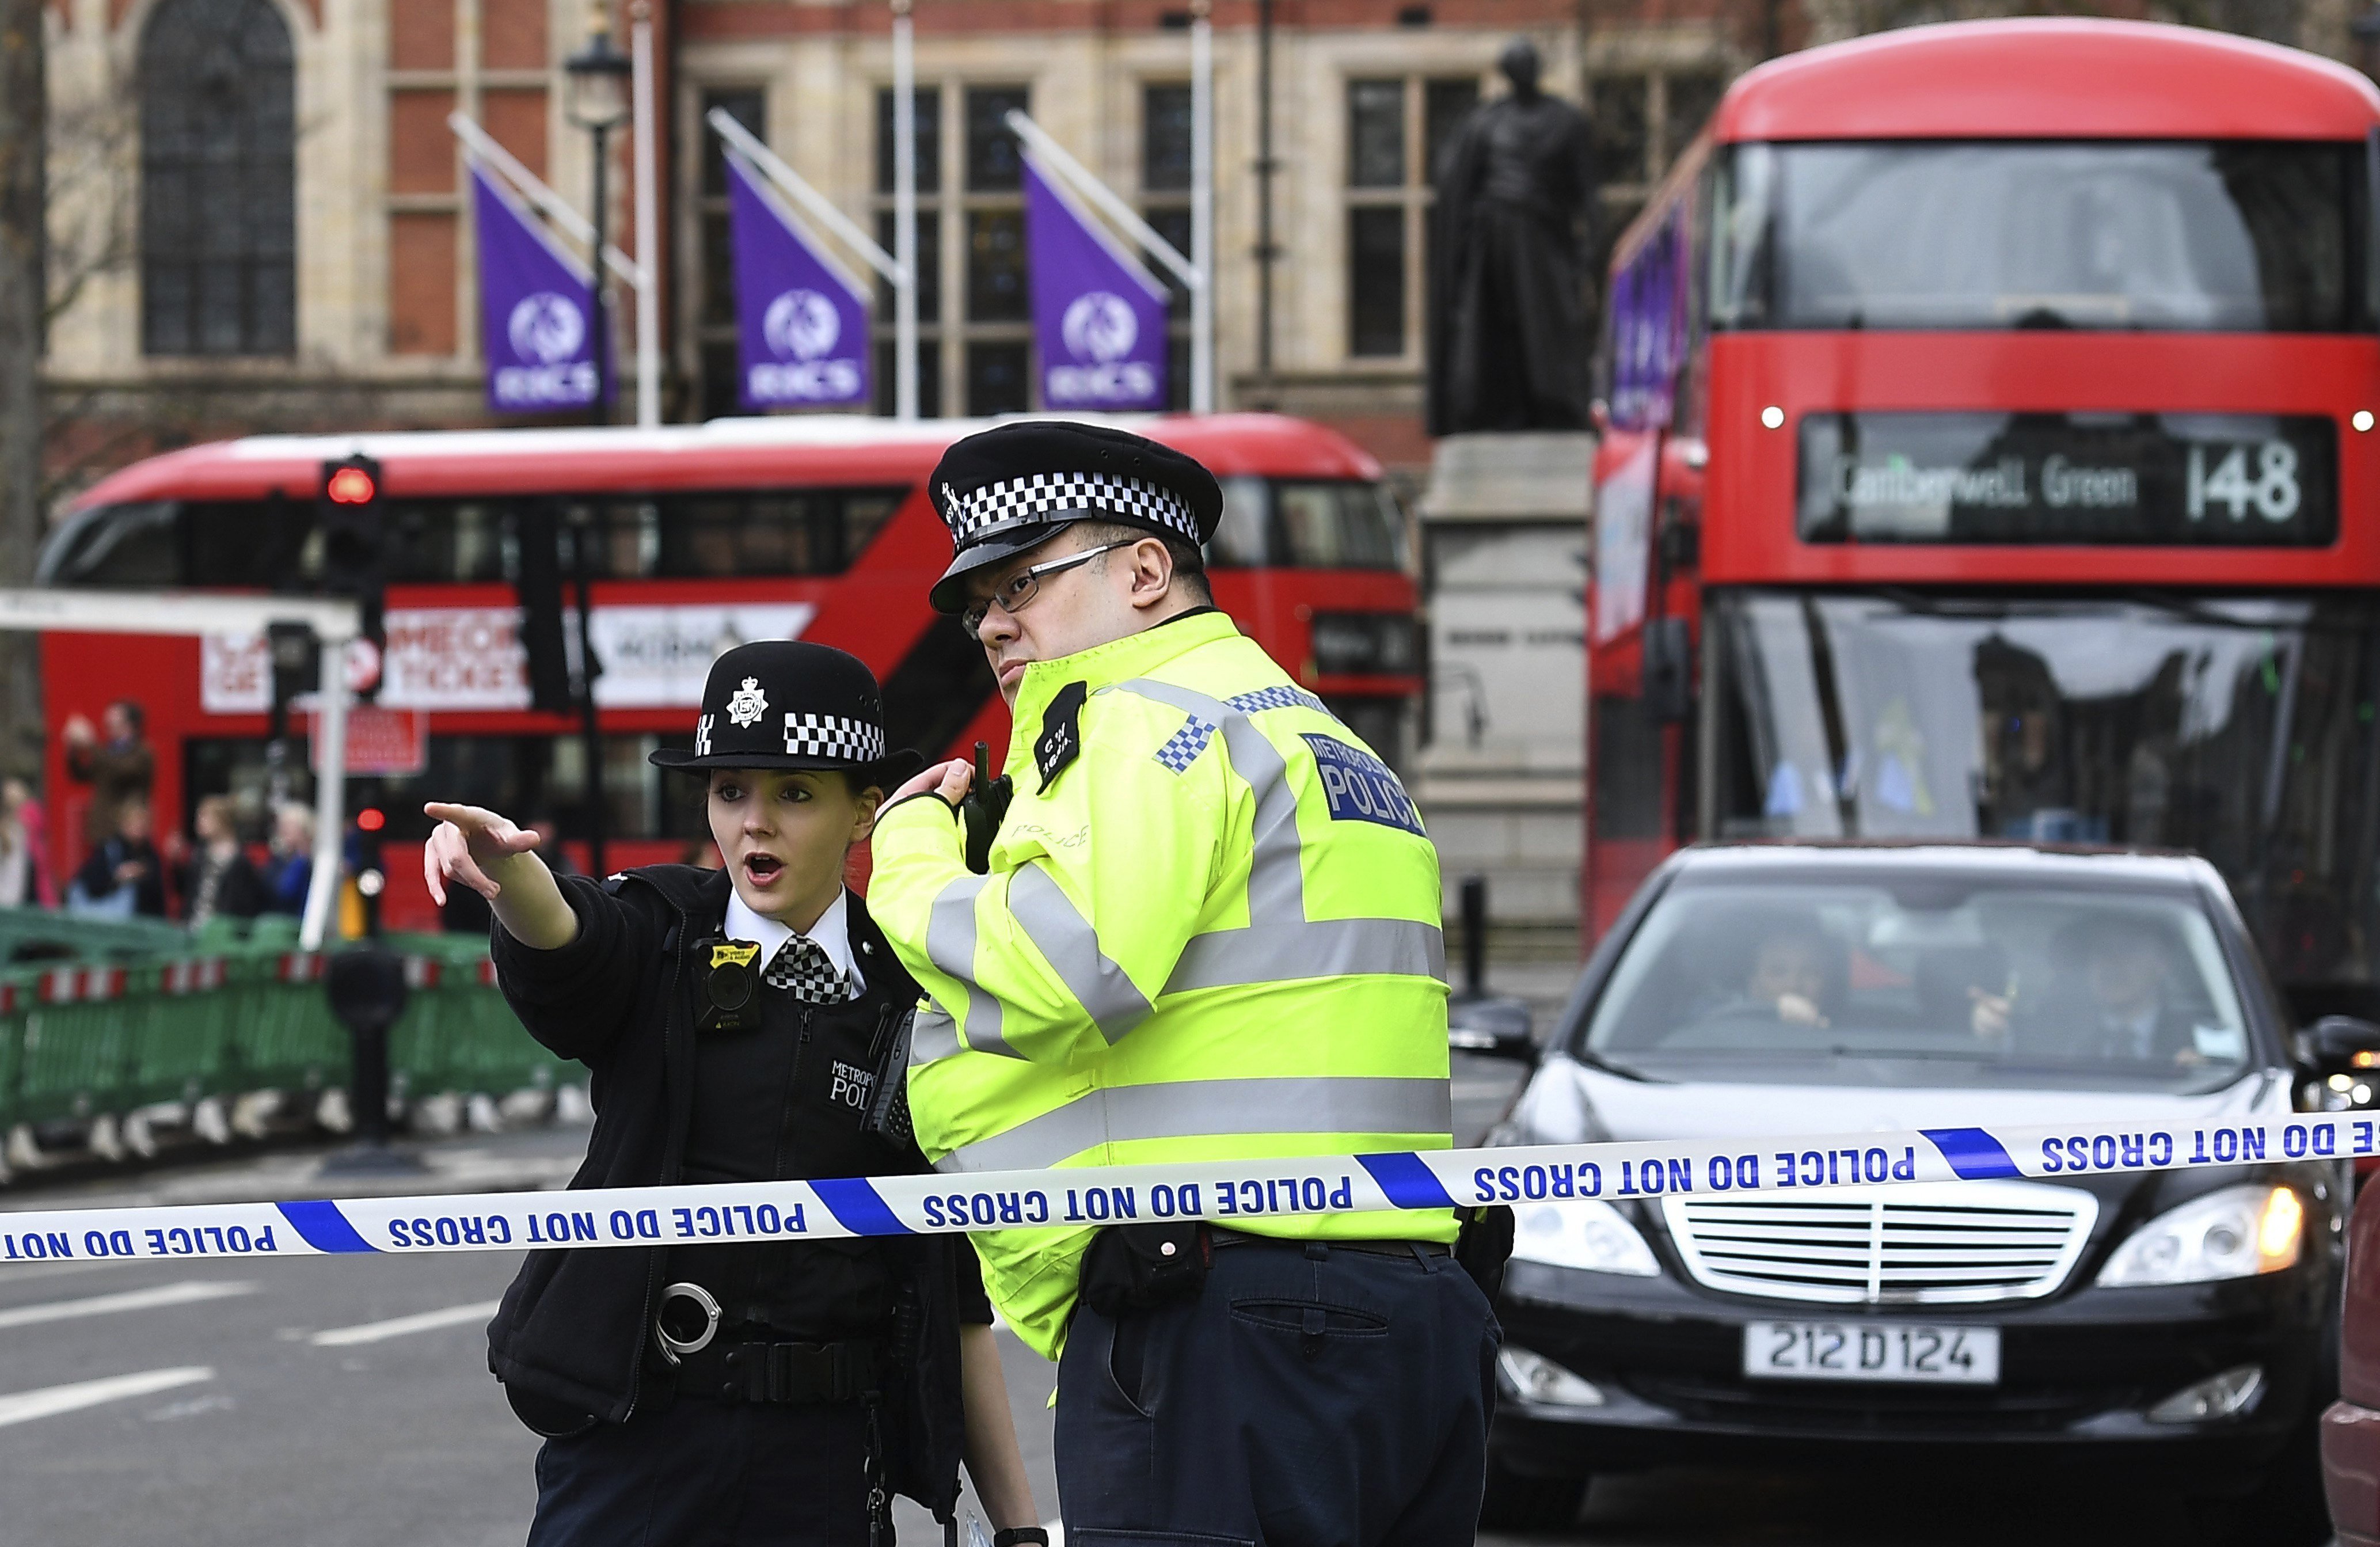 El atacante de Londres era británico pero con conexiones con la violencia extrema